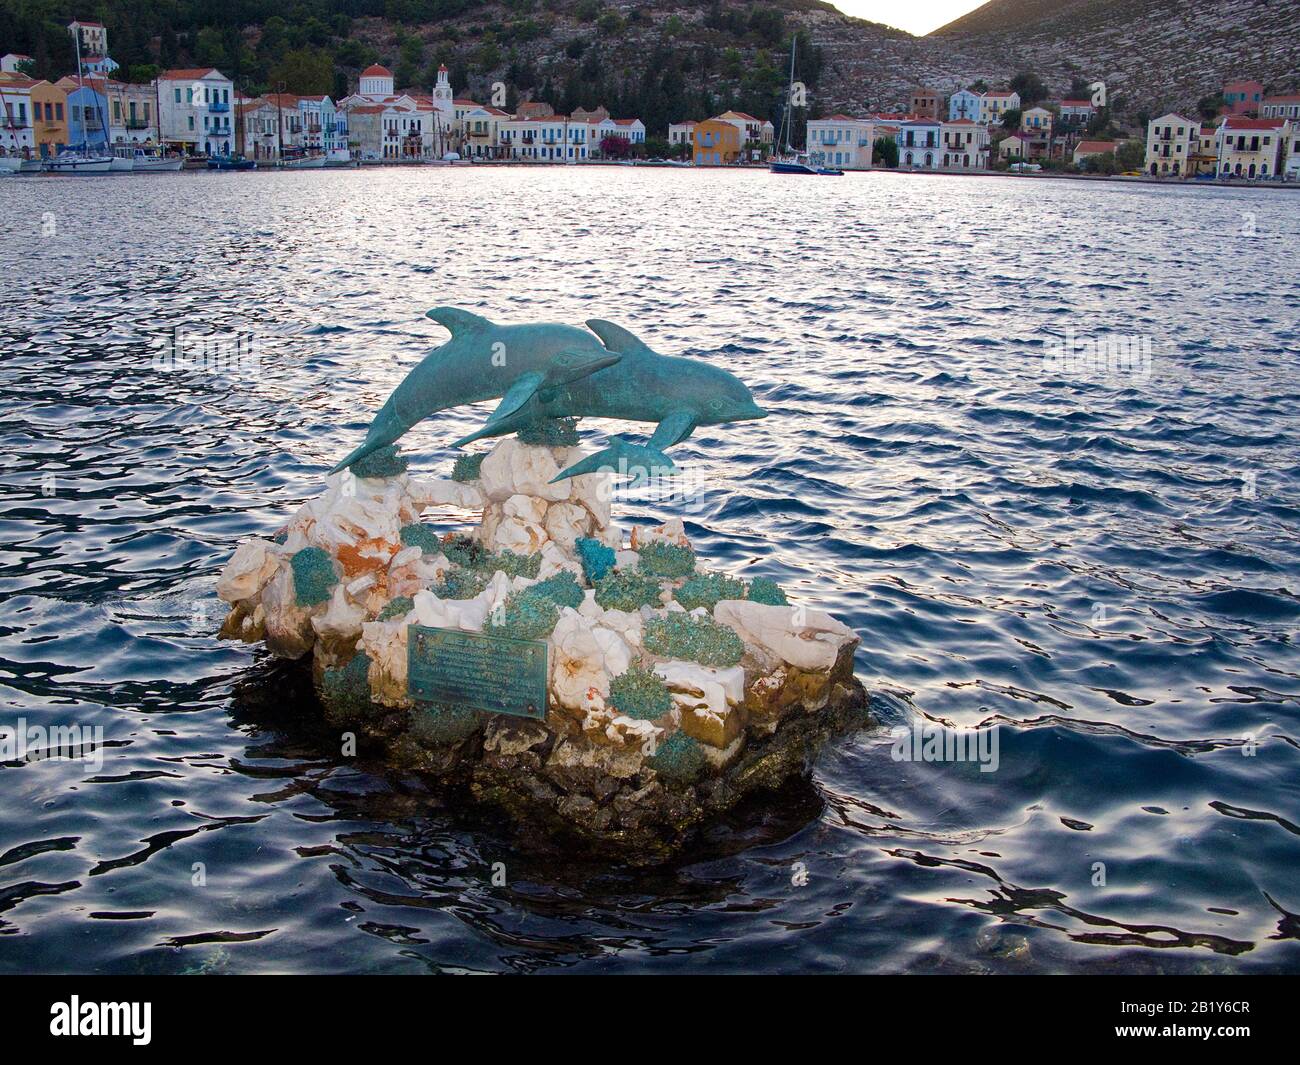 Abendstimmung en Kastelorizo, Delfin-Statue im Hafen der Insel Meis, Südägäis, Griechenland | humor Vespertino en la isla de Meis, también conocida como Kastellorizo, Foto de stock